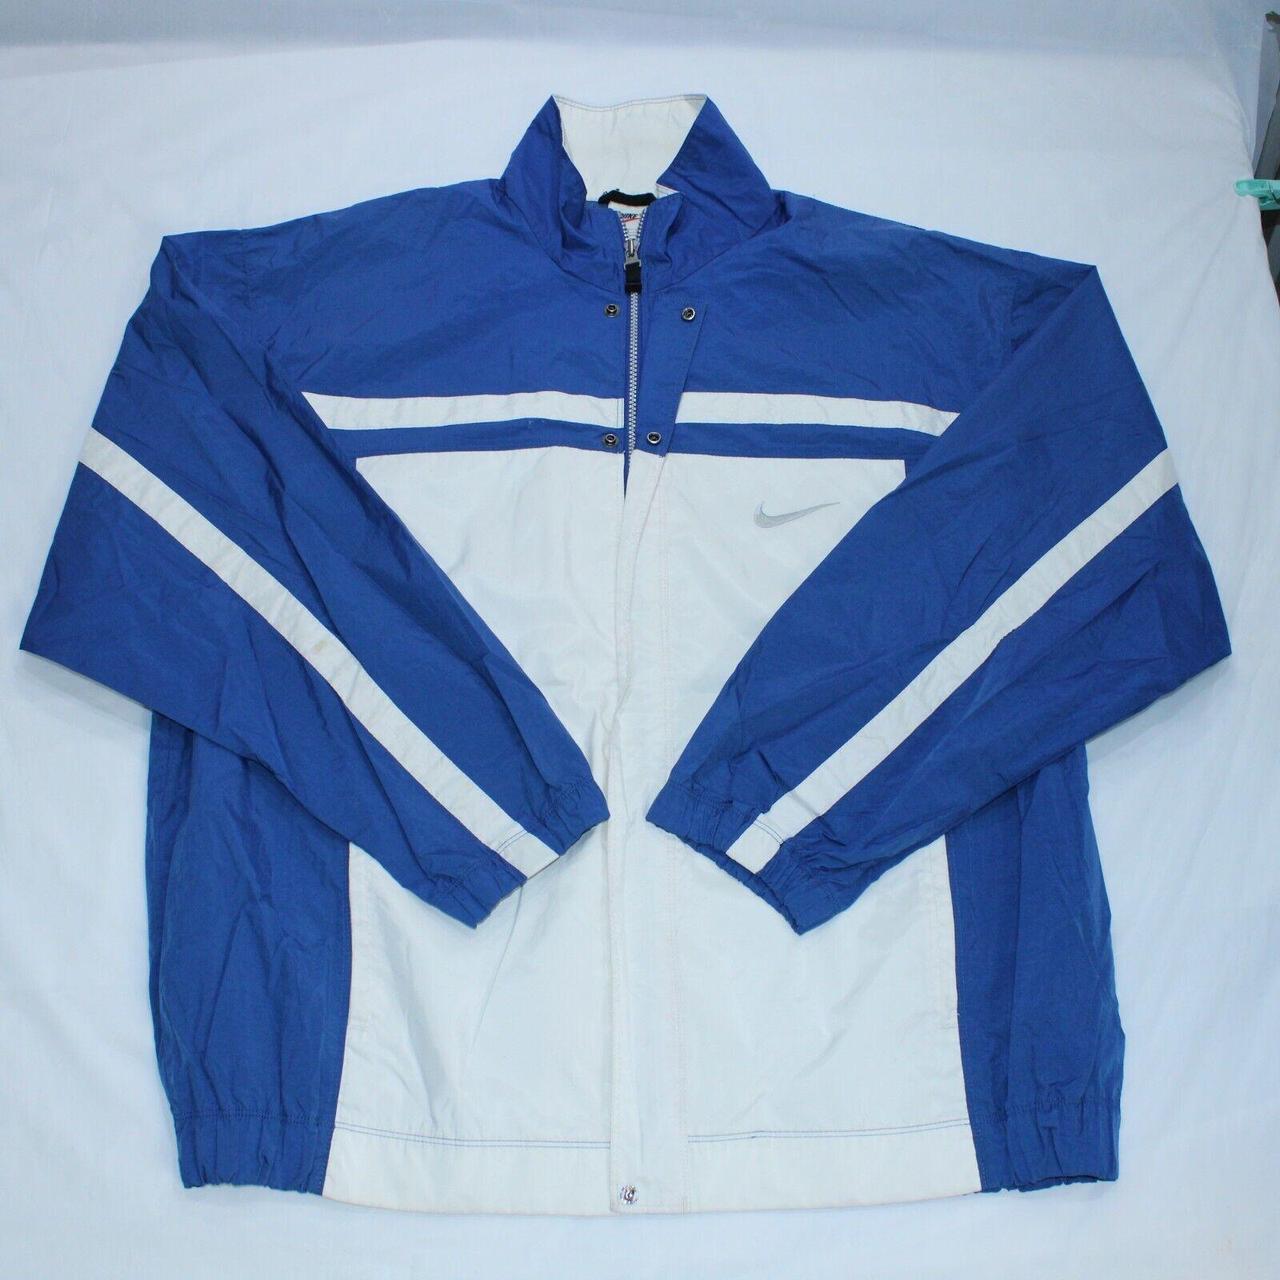 Vintage Nike Jacket Mens Large Blue Windbreaker... - Depop